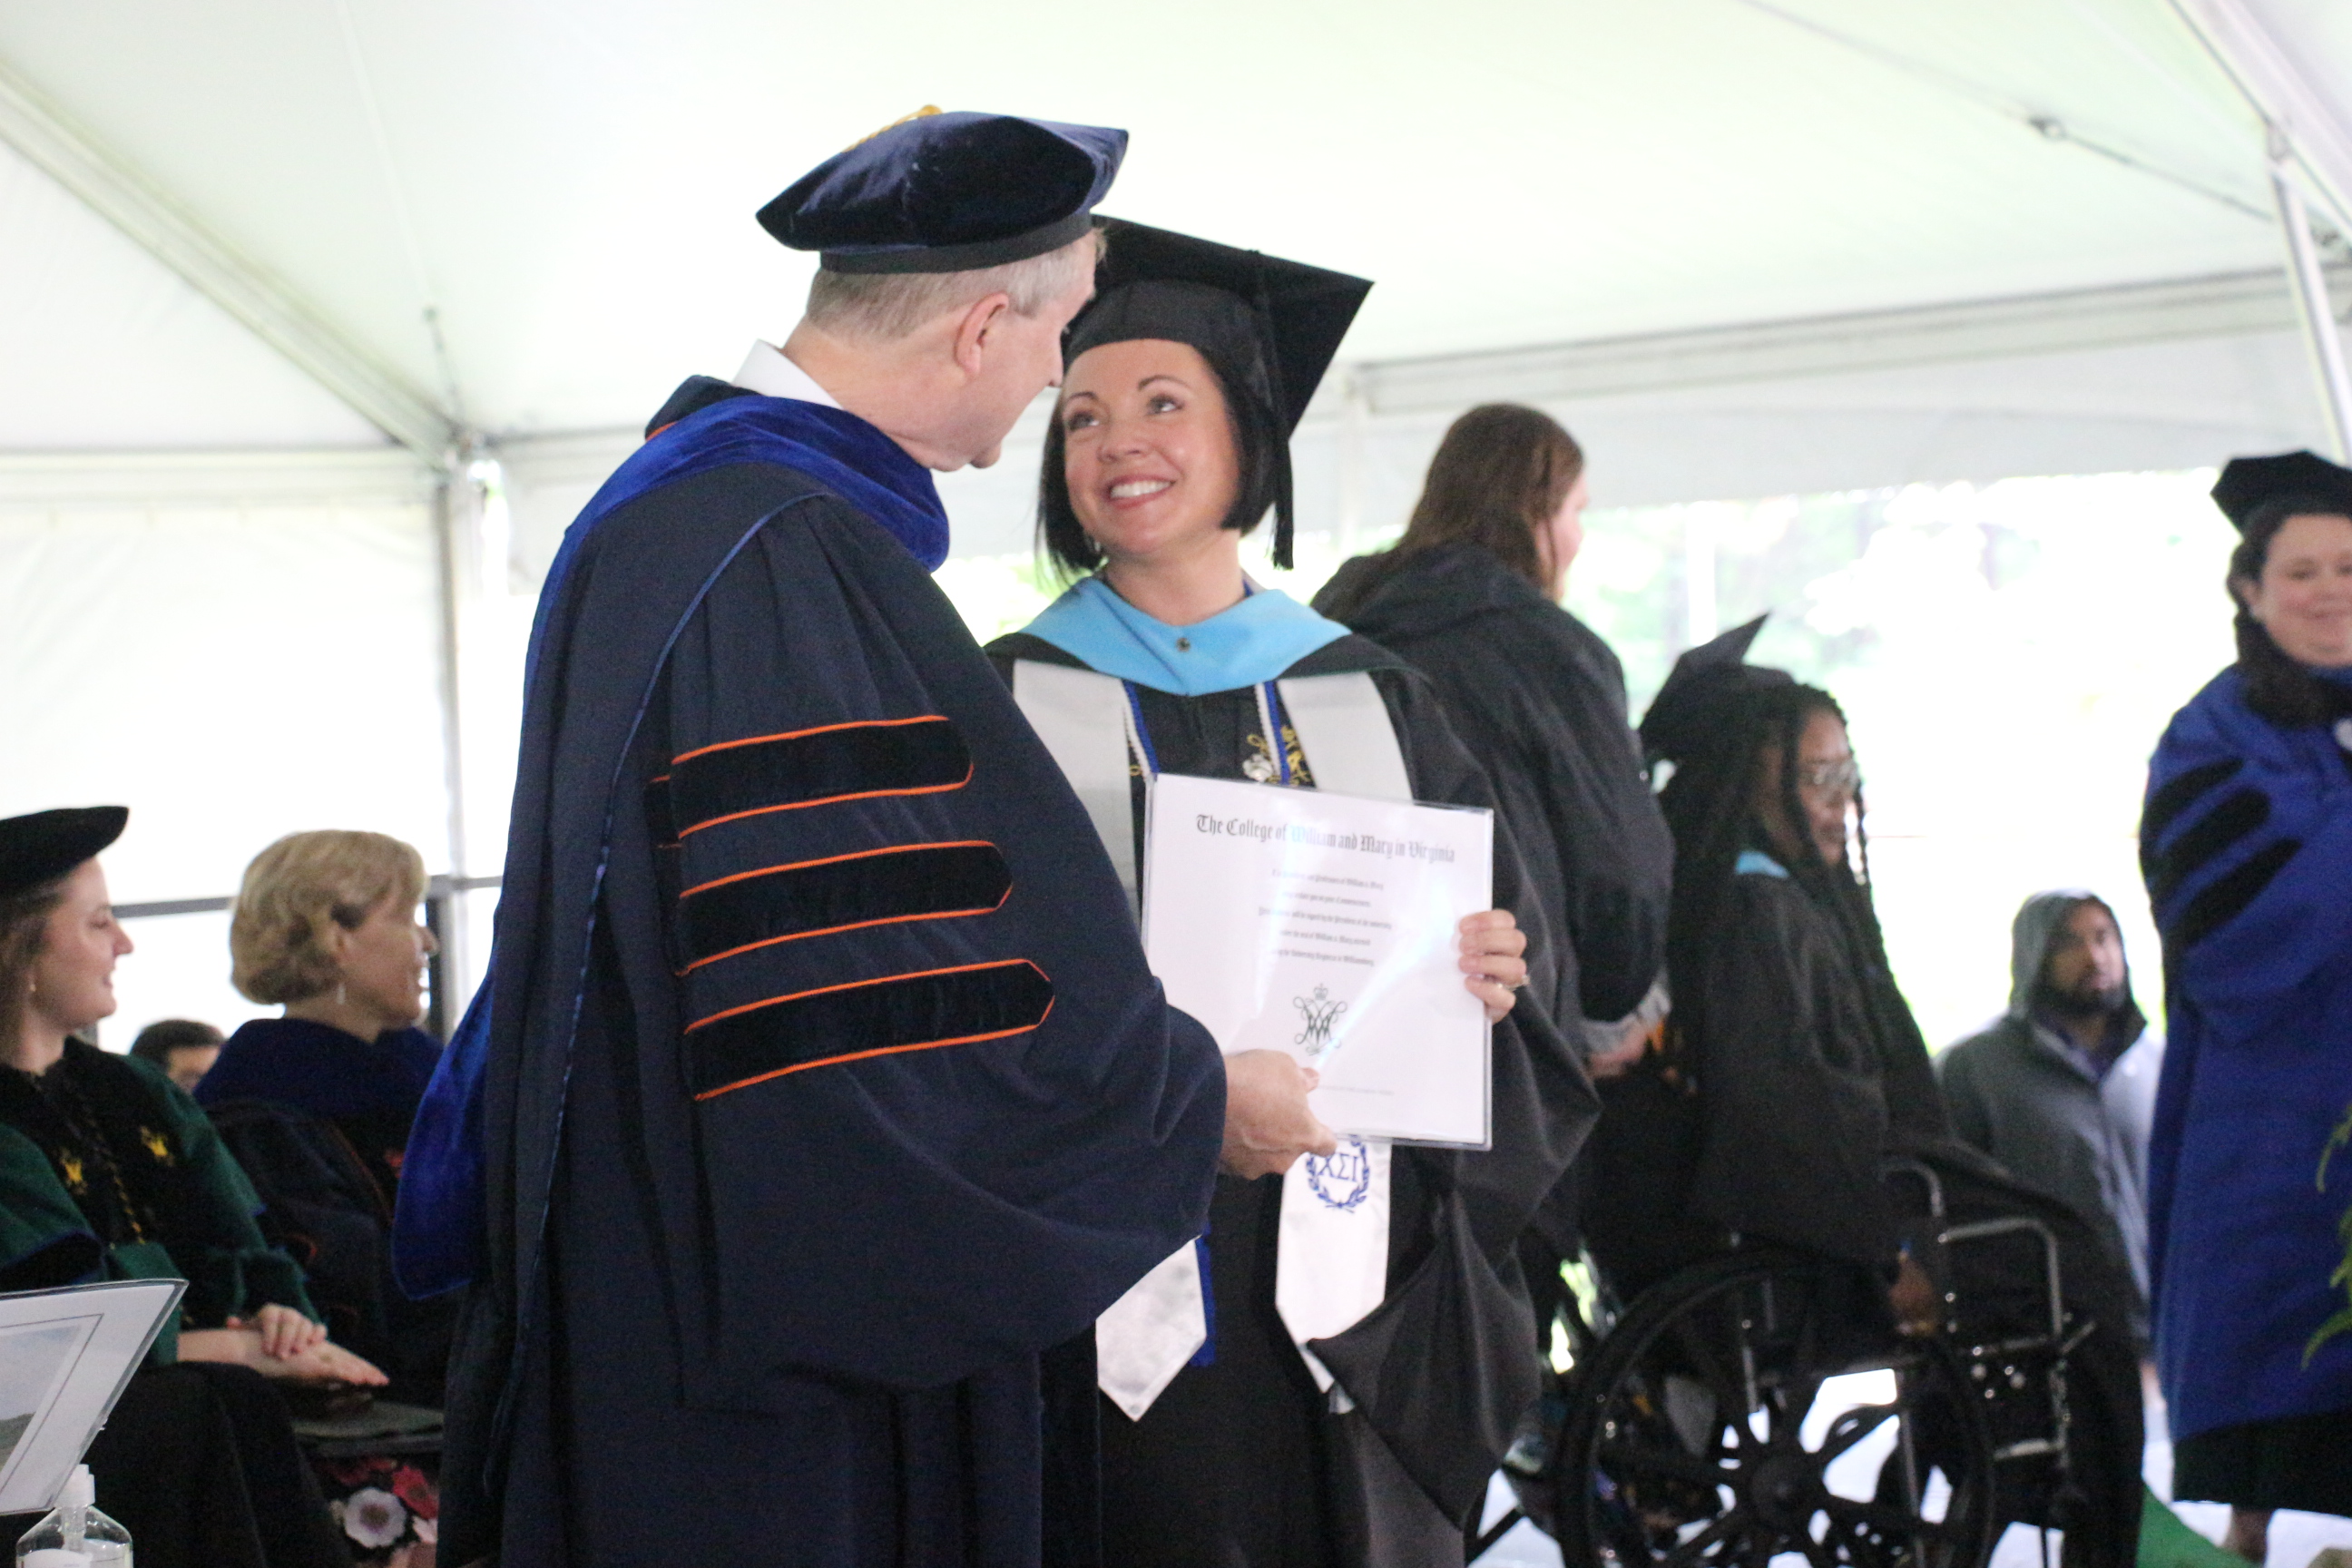 Graduate Receiving Diploma